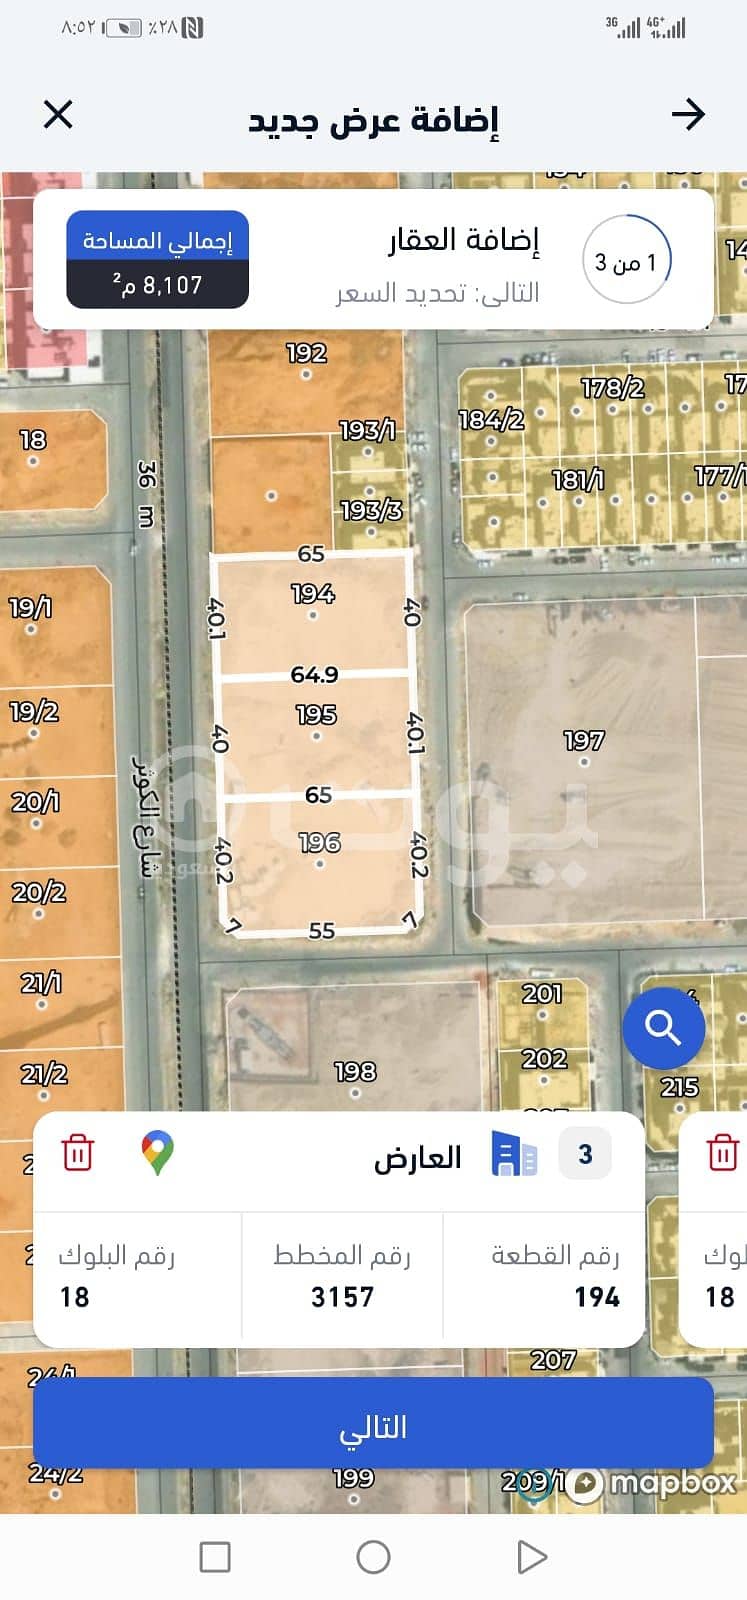 Commercial Land in Riyadh，North Riyadh，Al Arid 36481500 SAR - 87527763